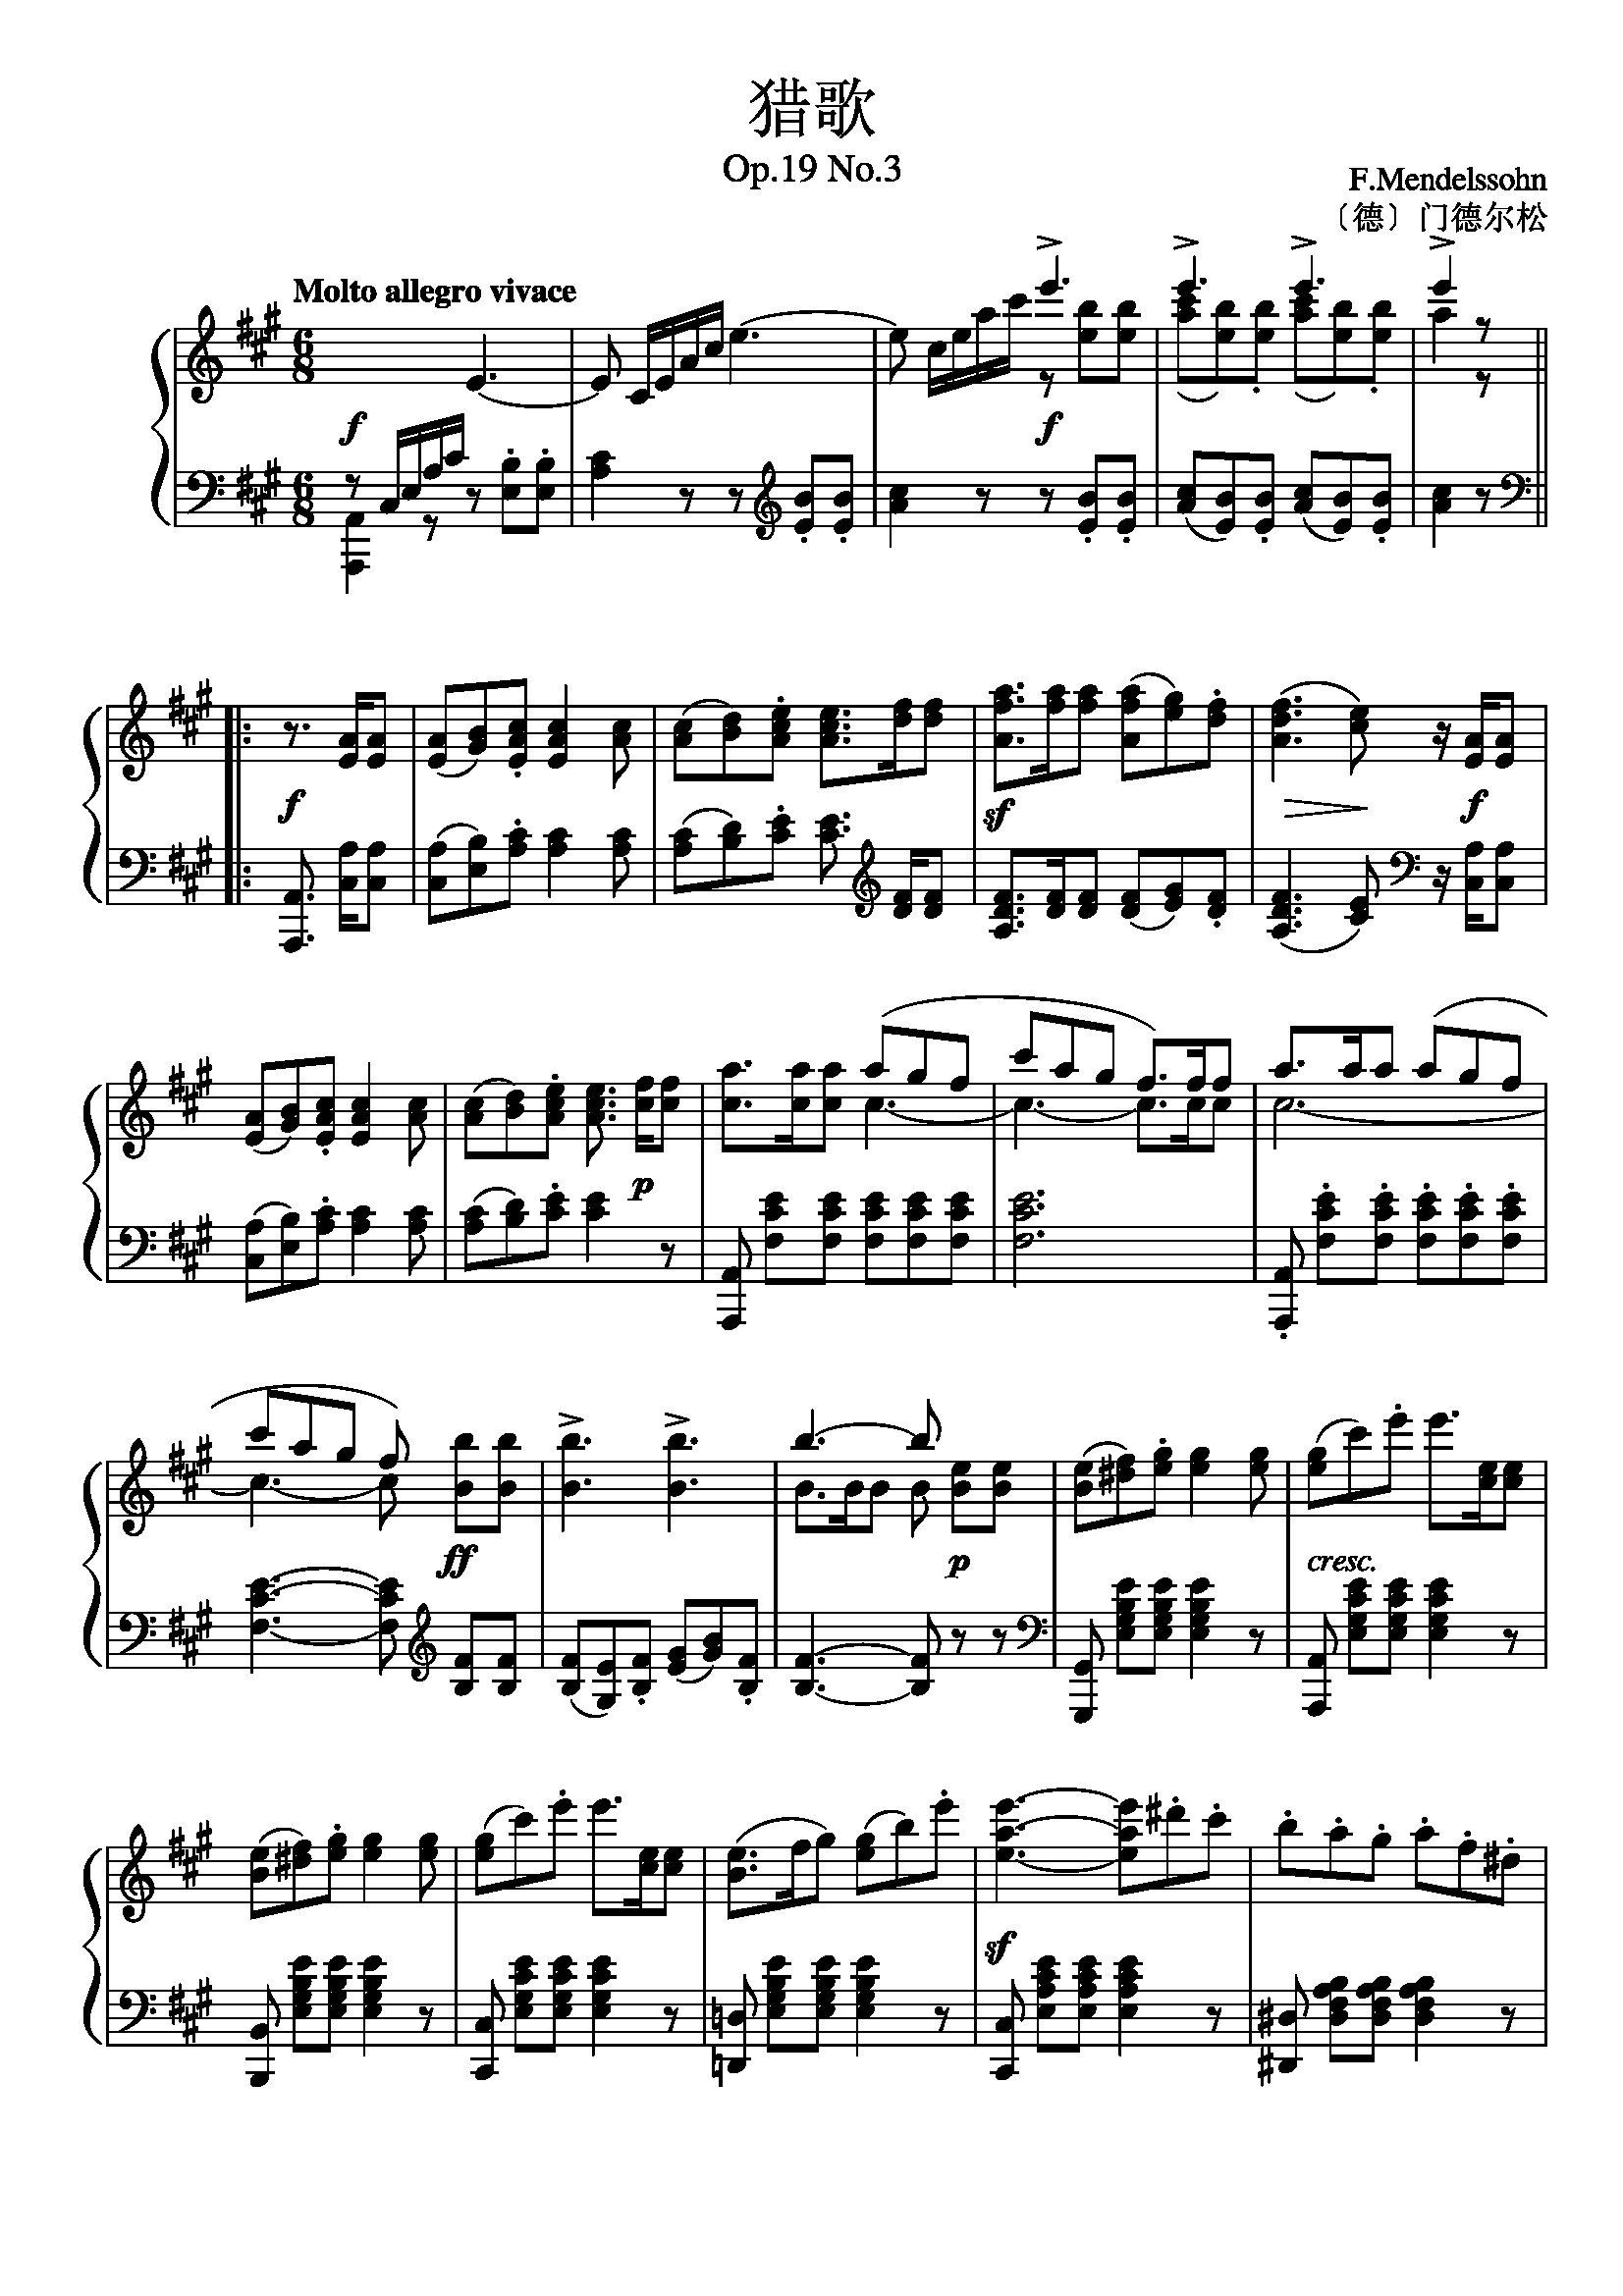 猎歌- 门德尔松 op.19 no.